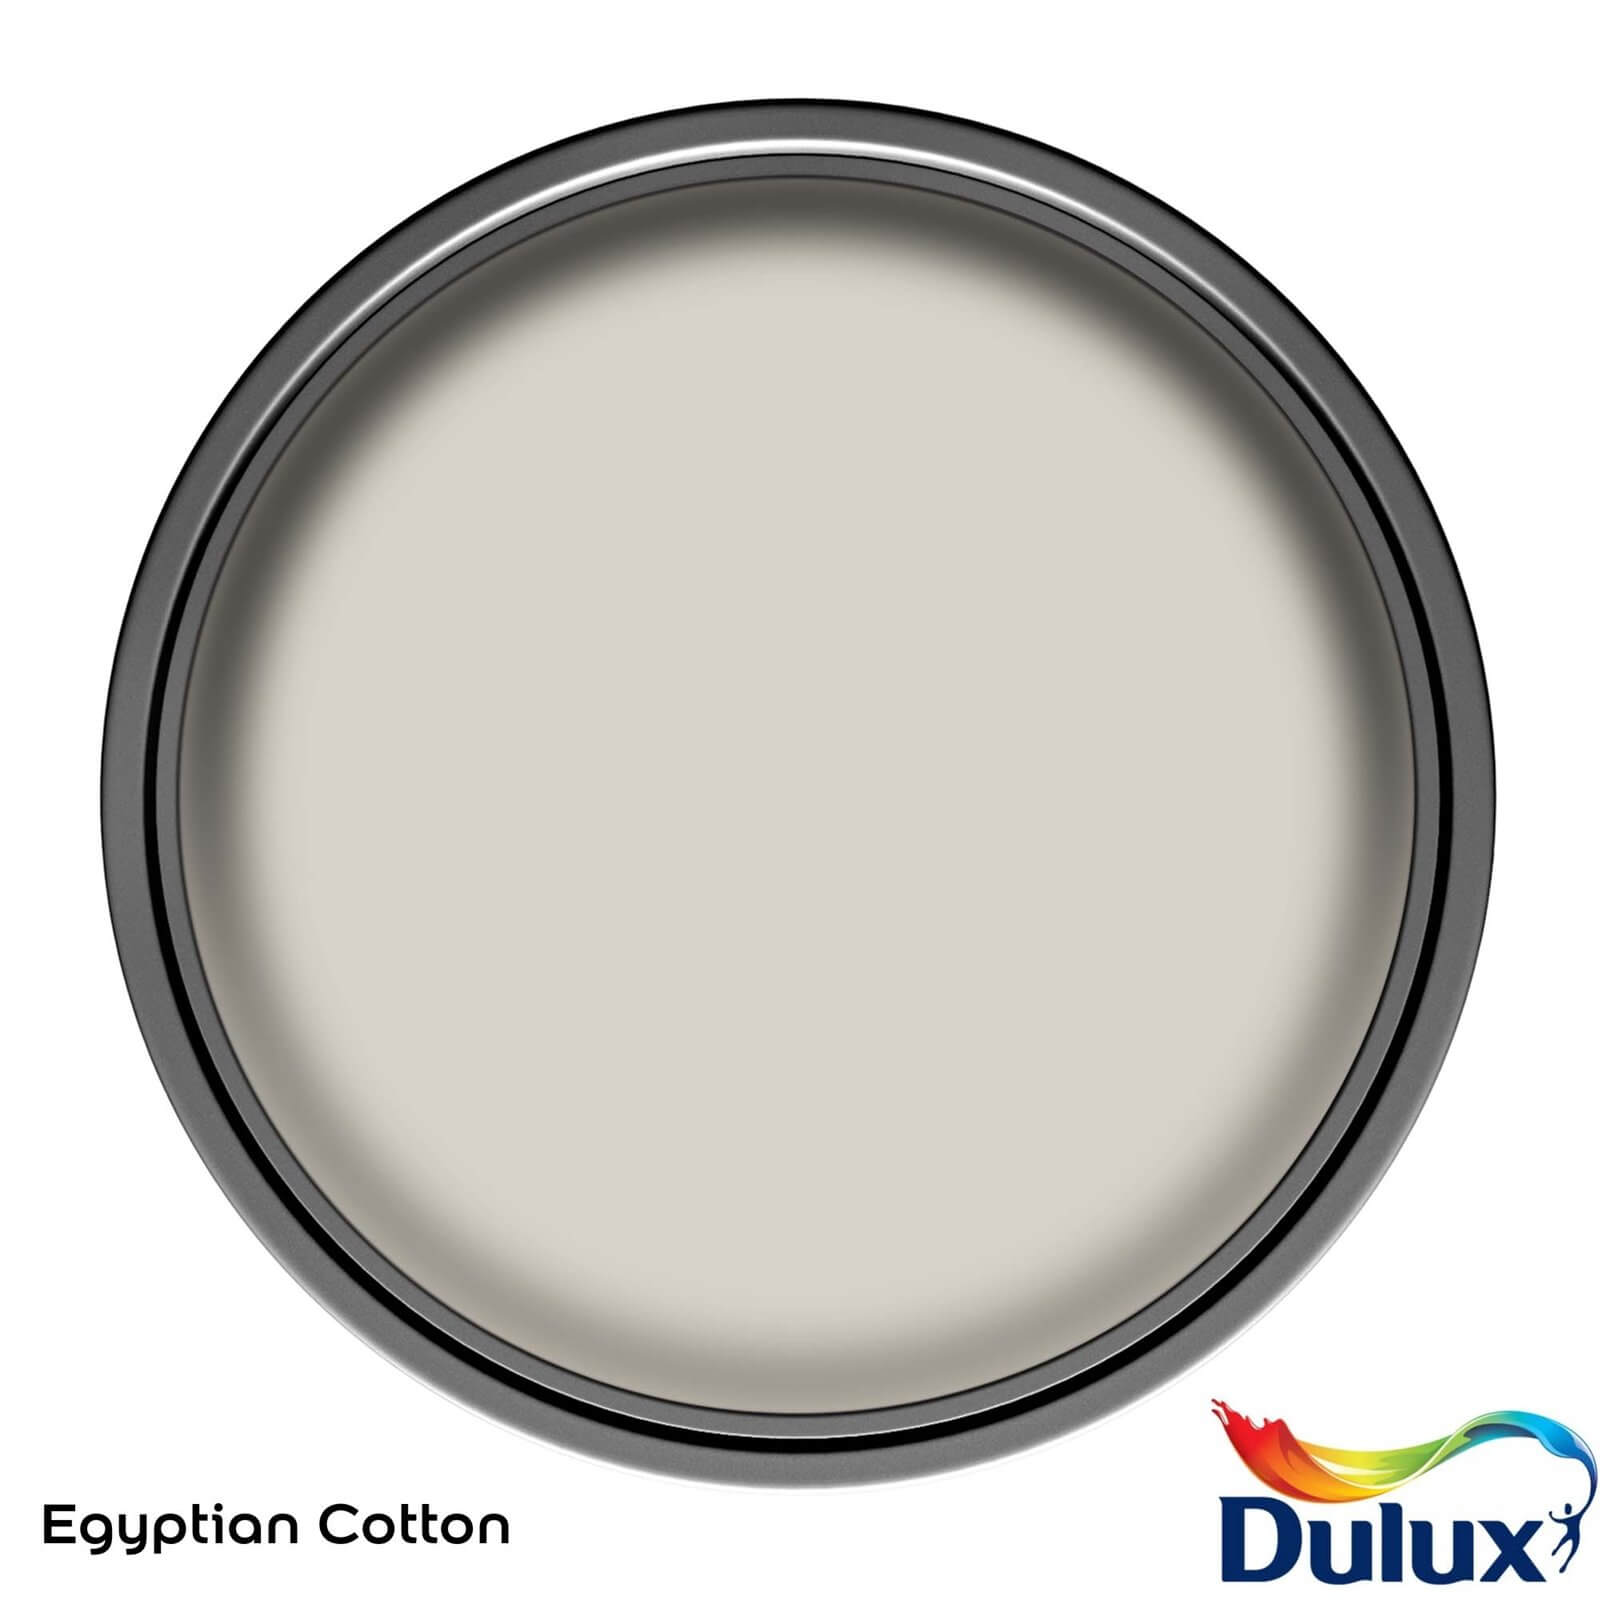 Dulux Easycare Washable & Tough Matt Paint Egyptian Cotton - 5L